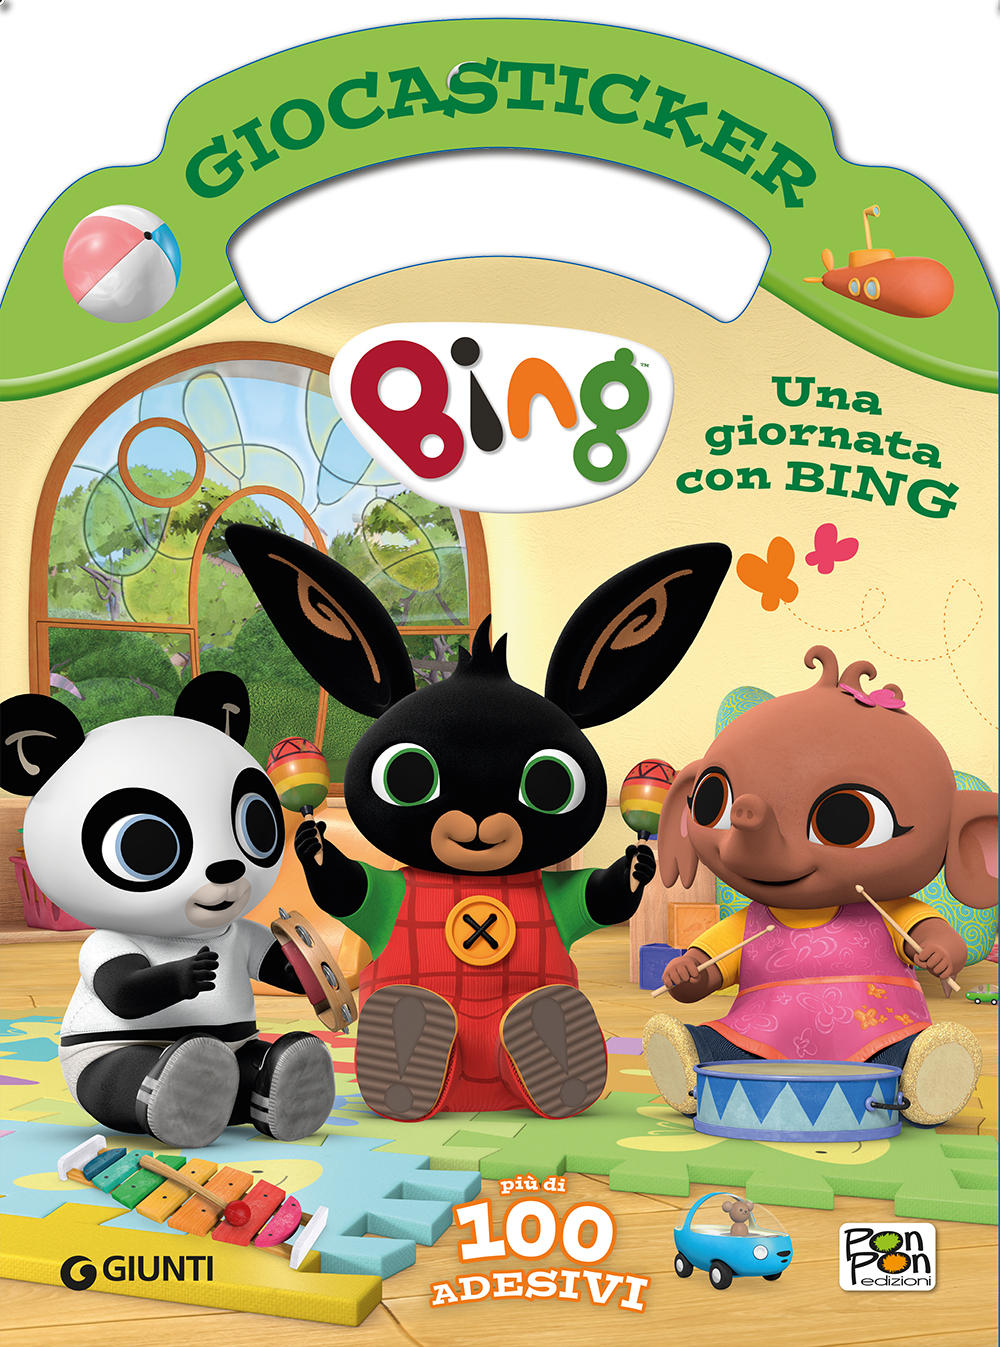 Giocasticker Bing-Una giornata con Bing